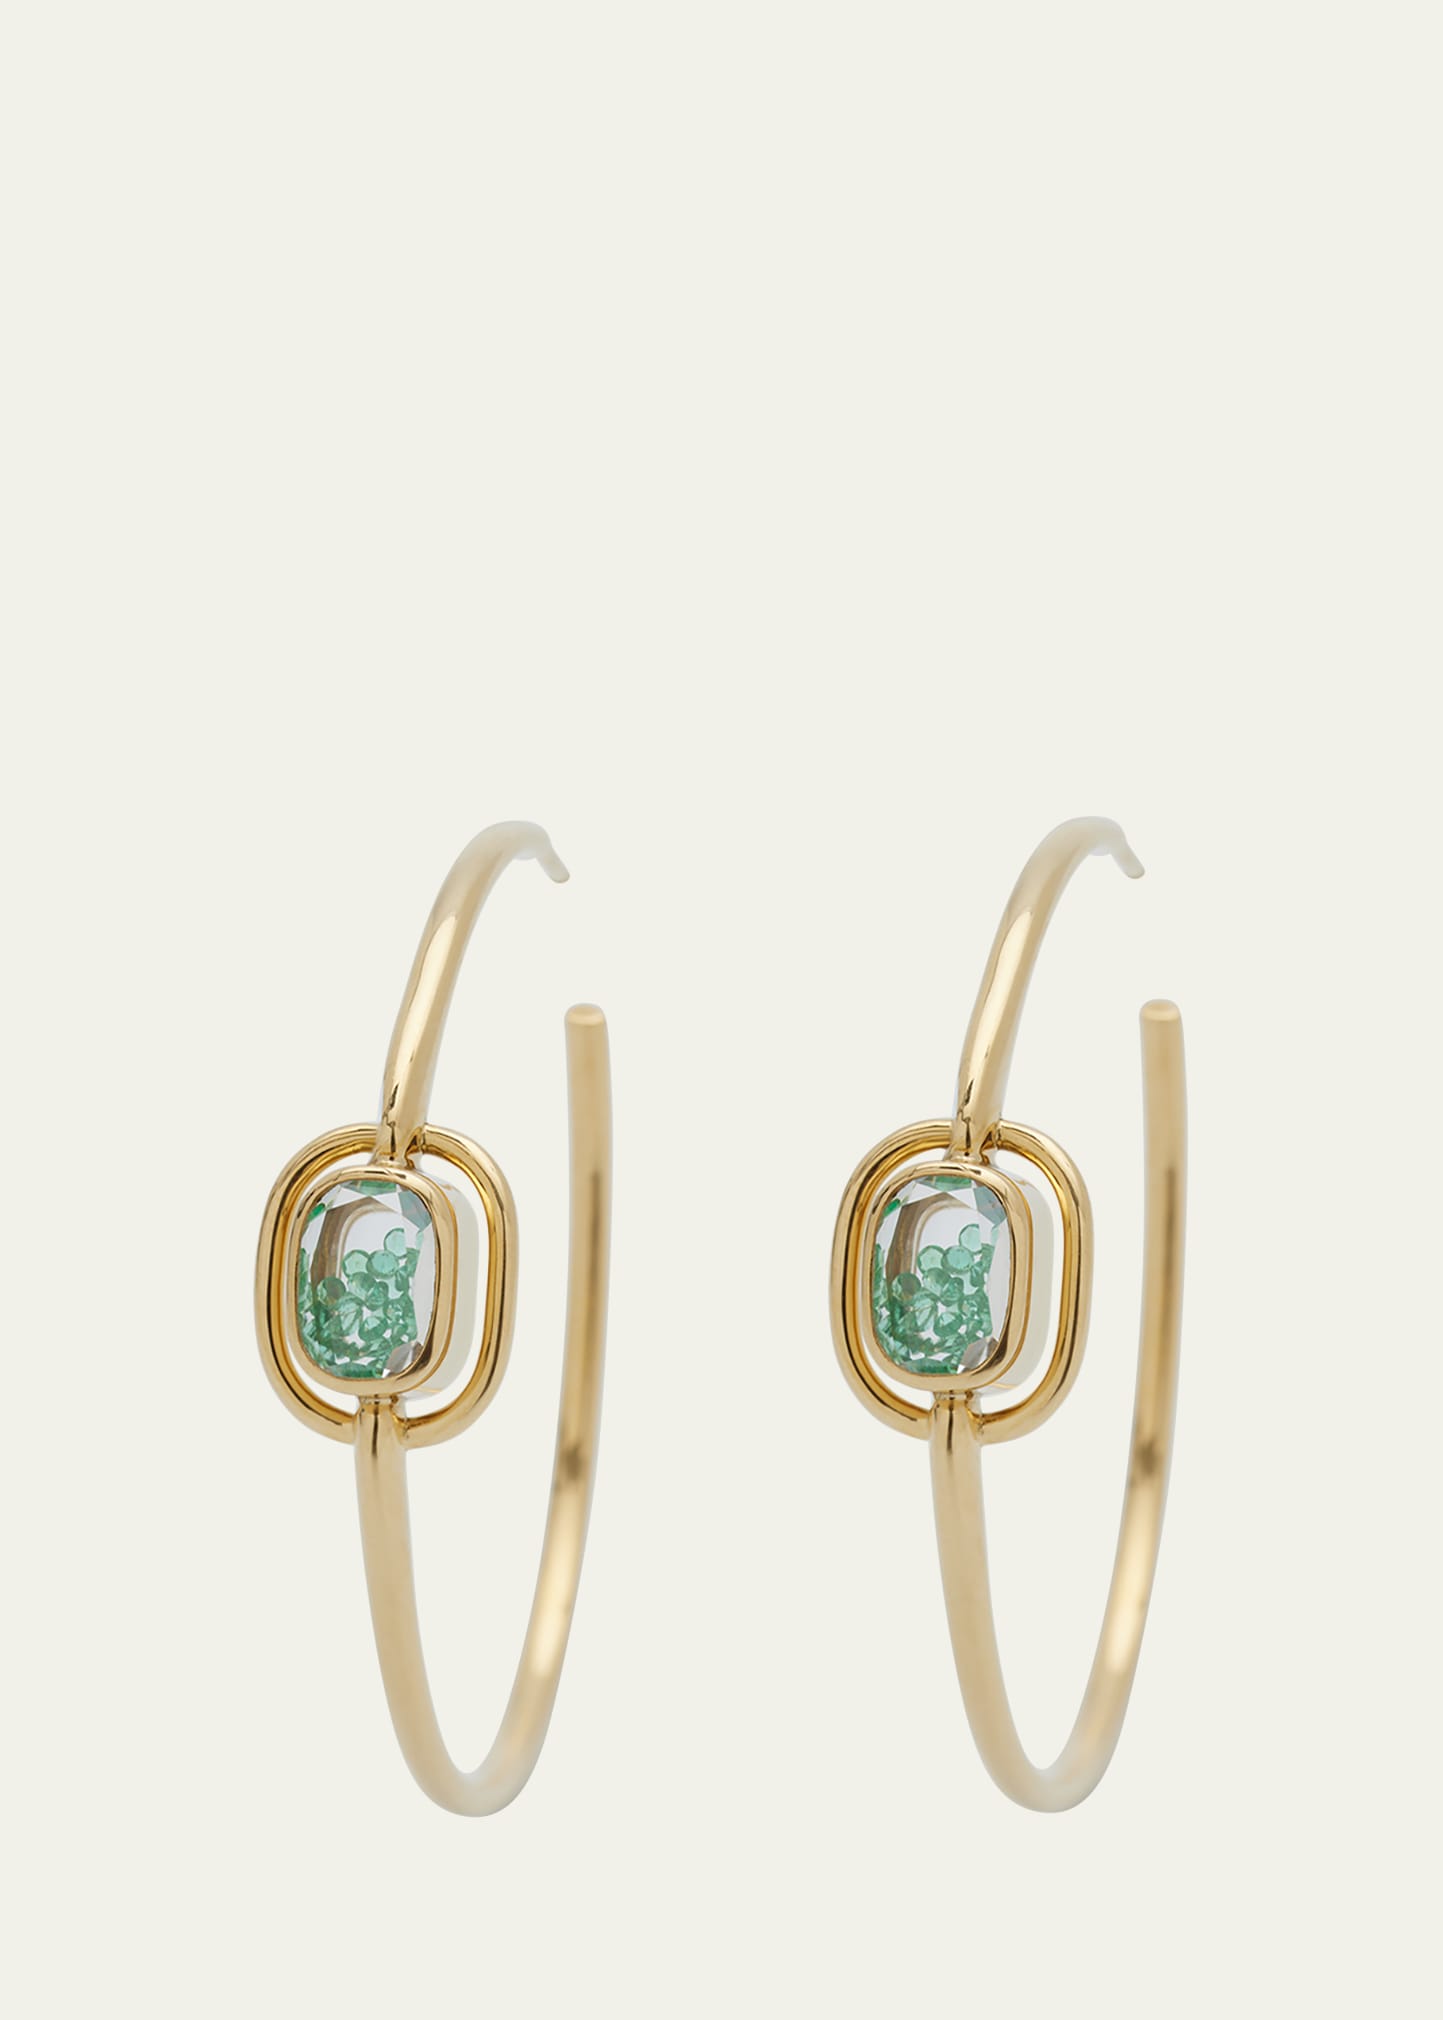 Elo 40 Emerald Shaker Hoop Earrings in 18k Gold